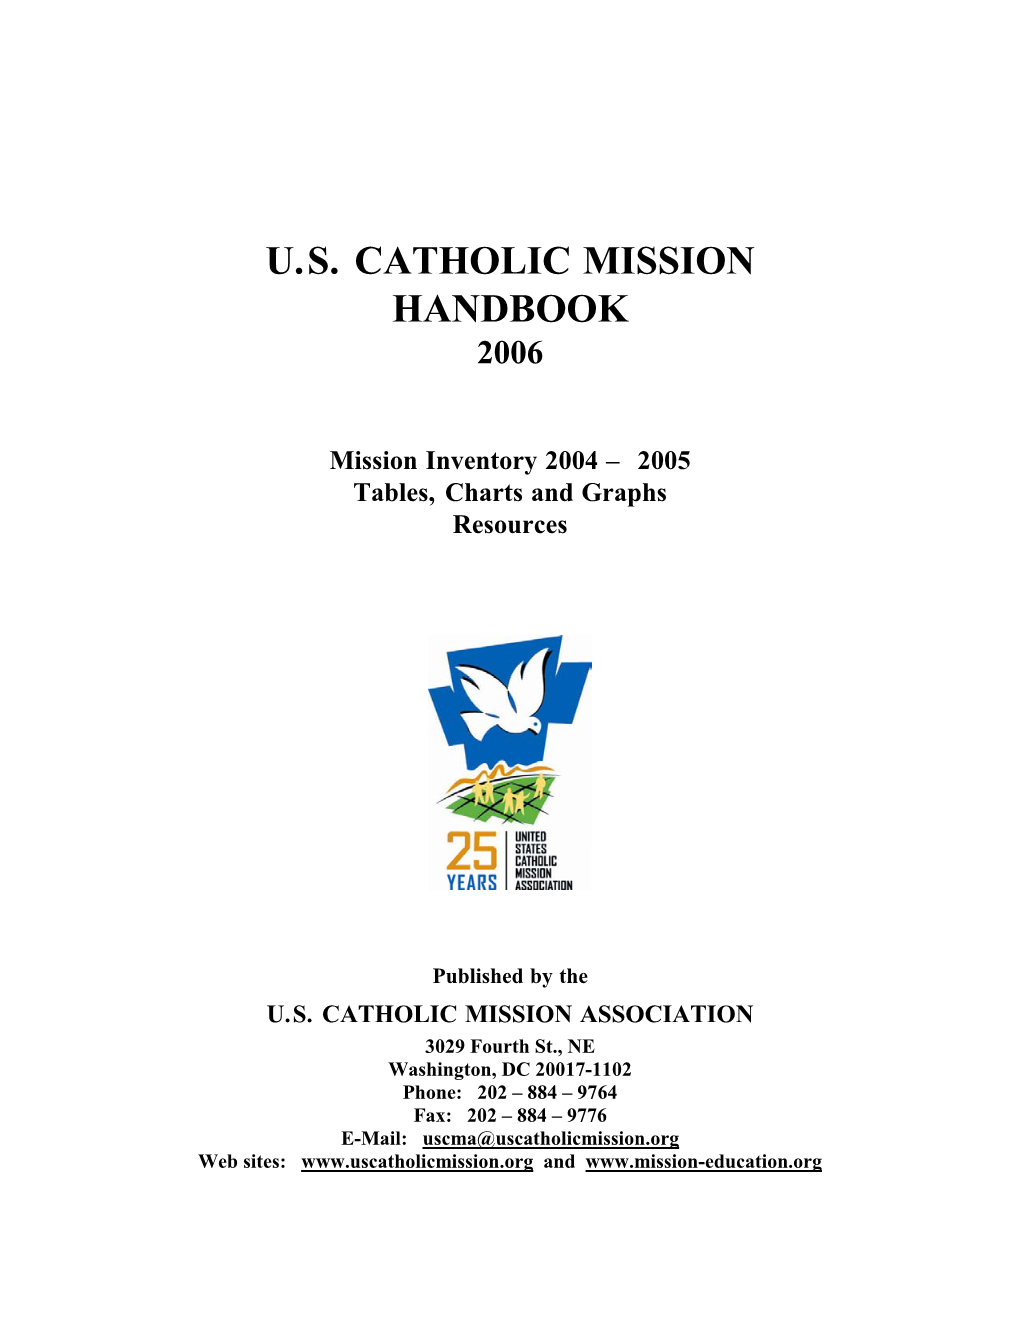 U.S. Catholic Mission Handbook 2006